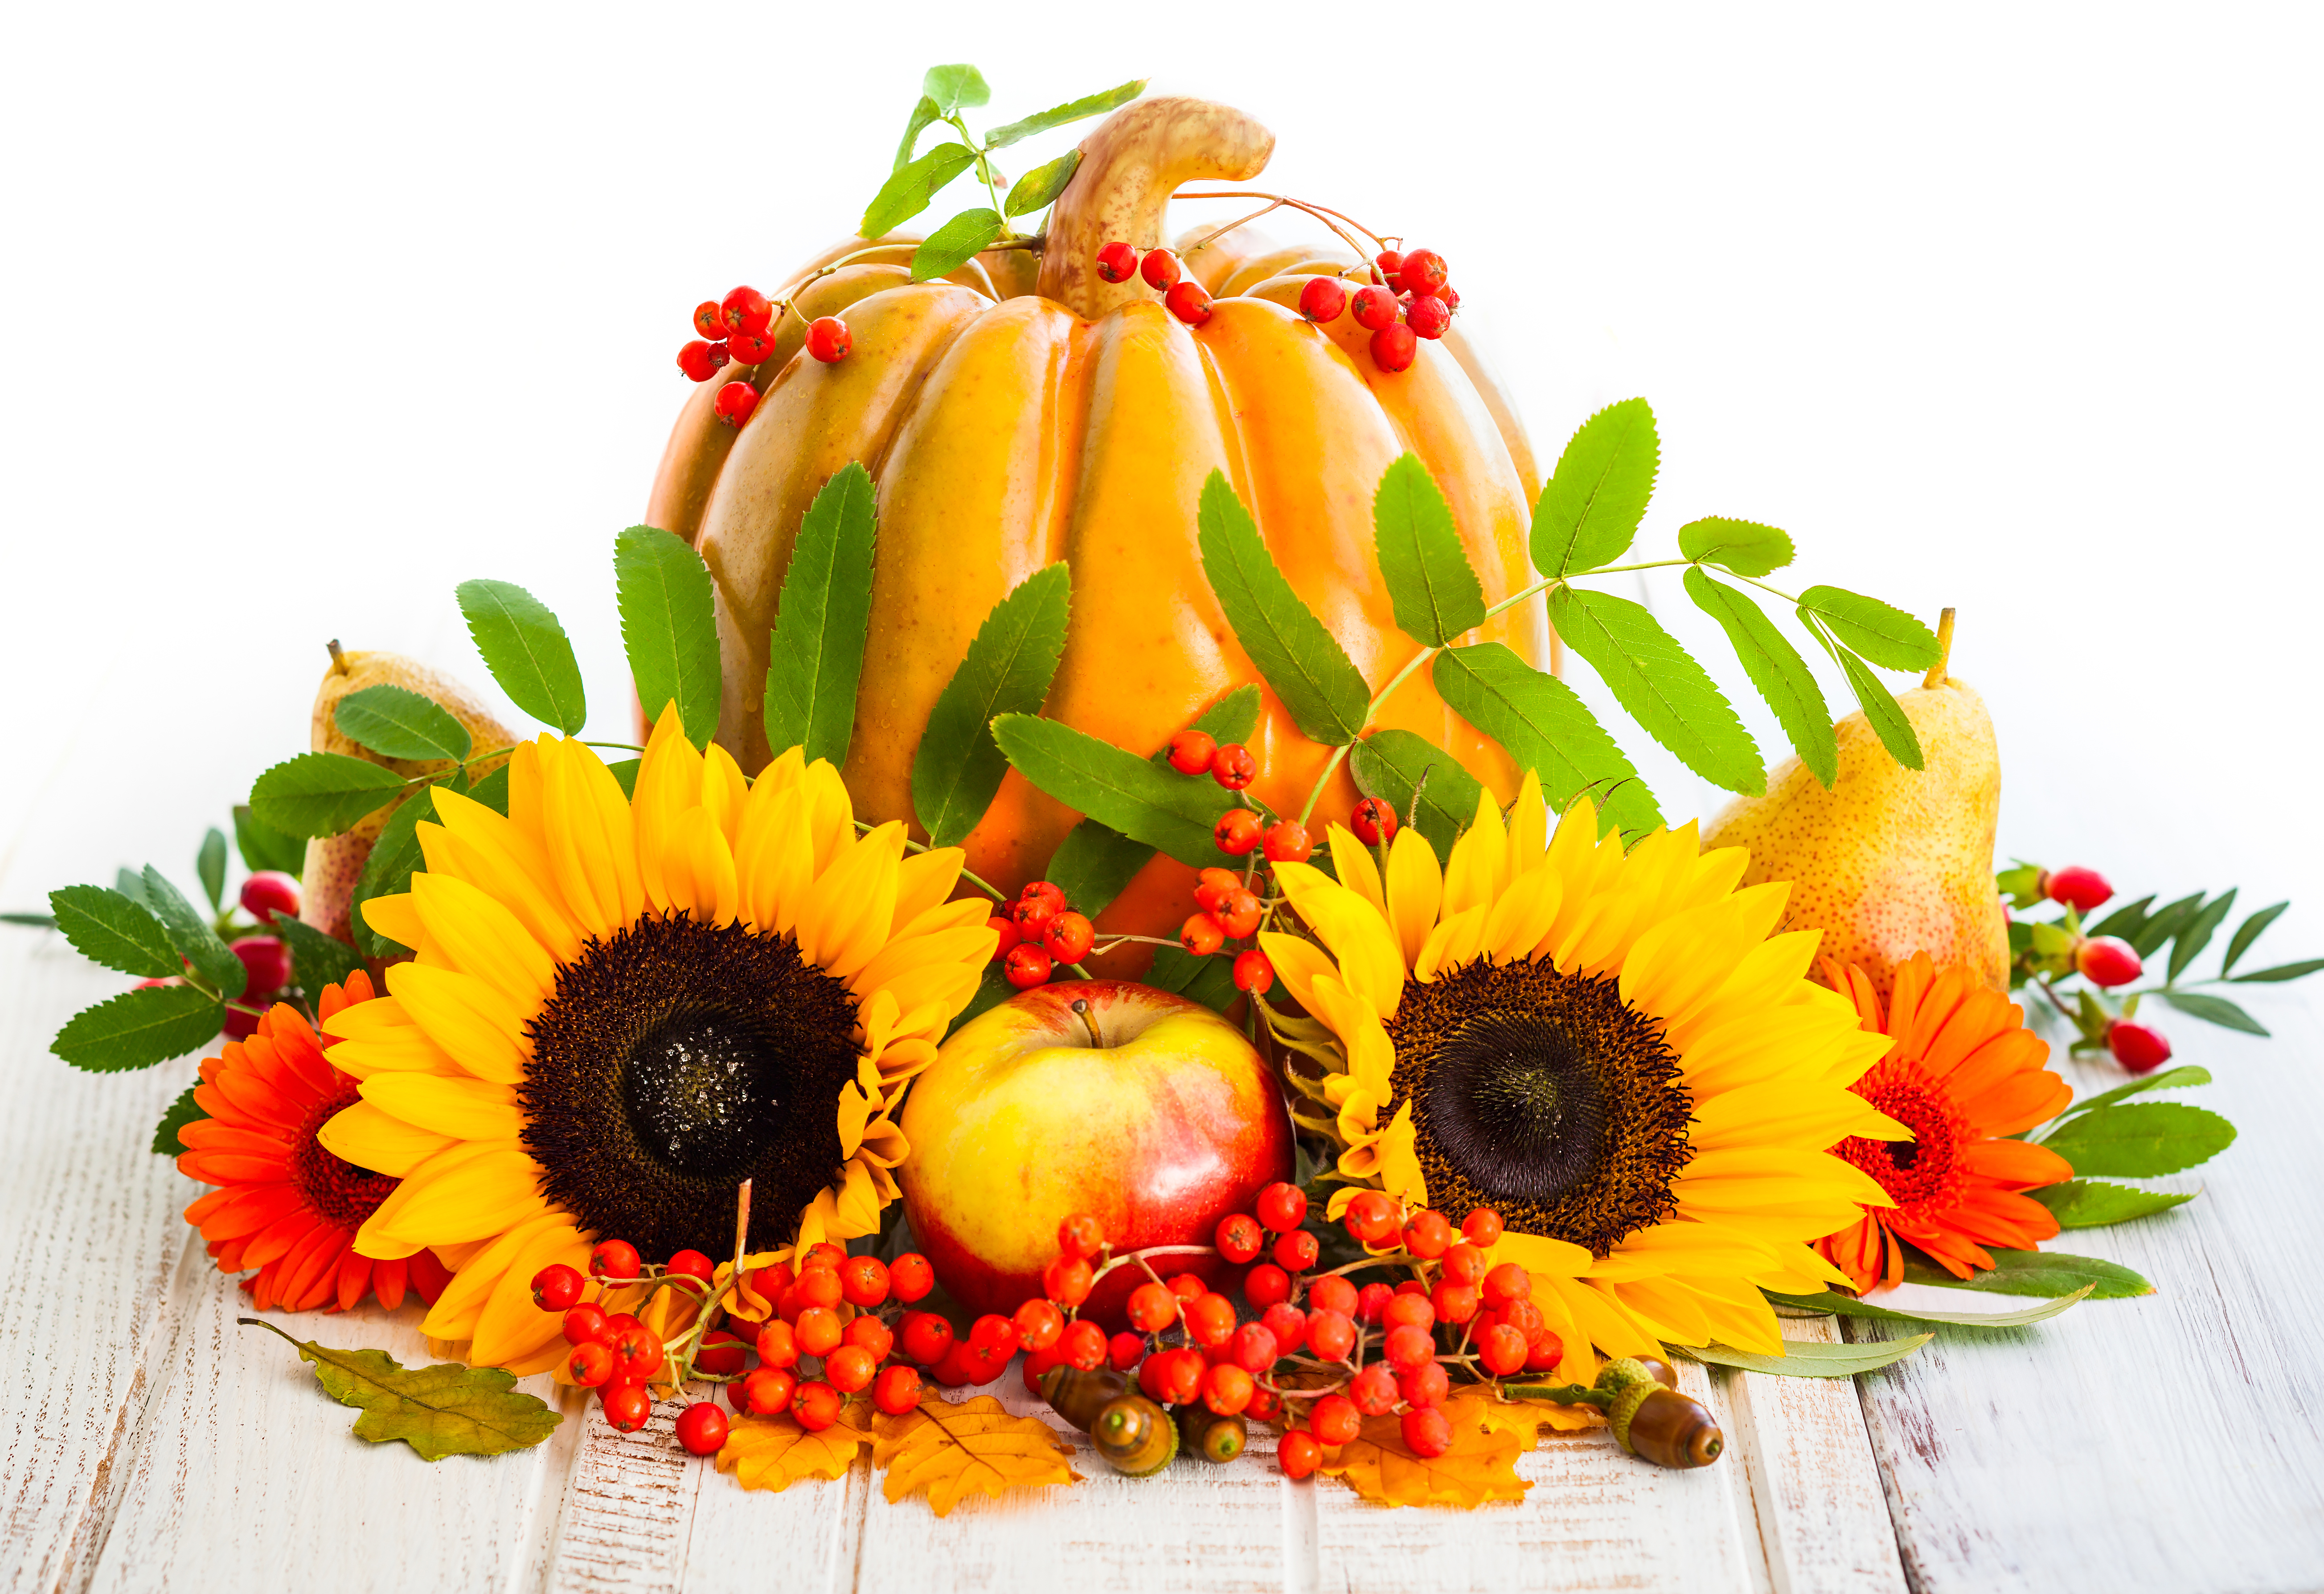 Фруктовый лист. Подсолнухи и фрукты. Осенние овощи и фрукты. Натюрморты с подсолнухами и фруктами. Осень тыква подсолнух.